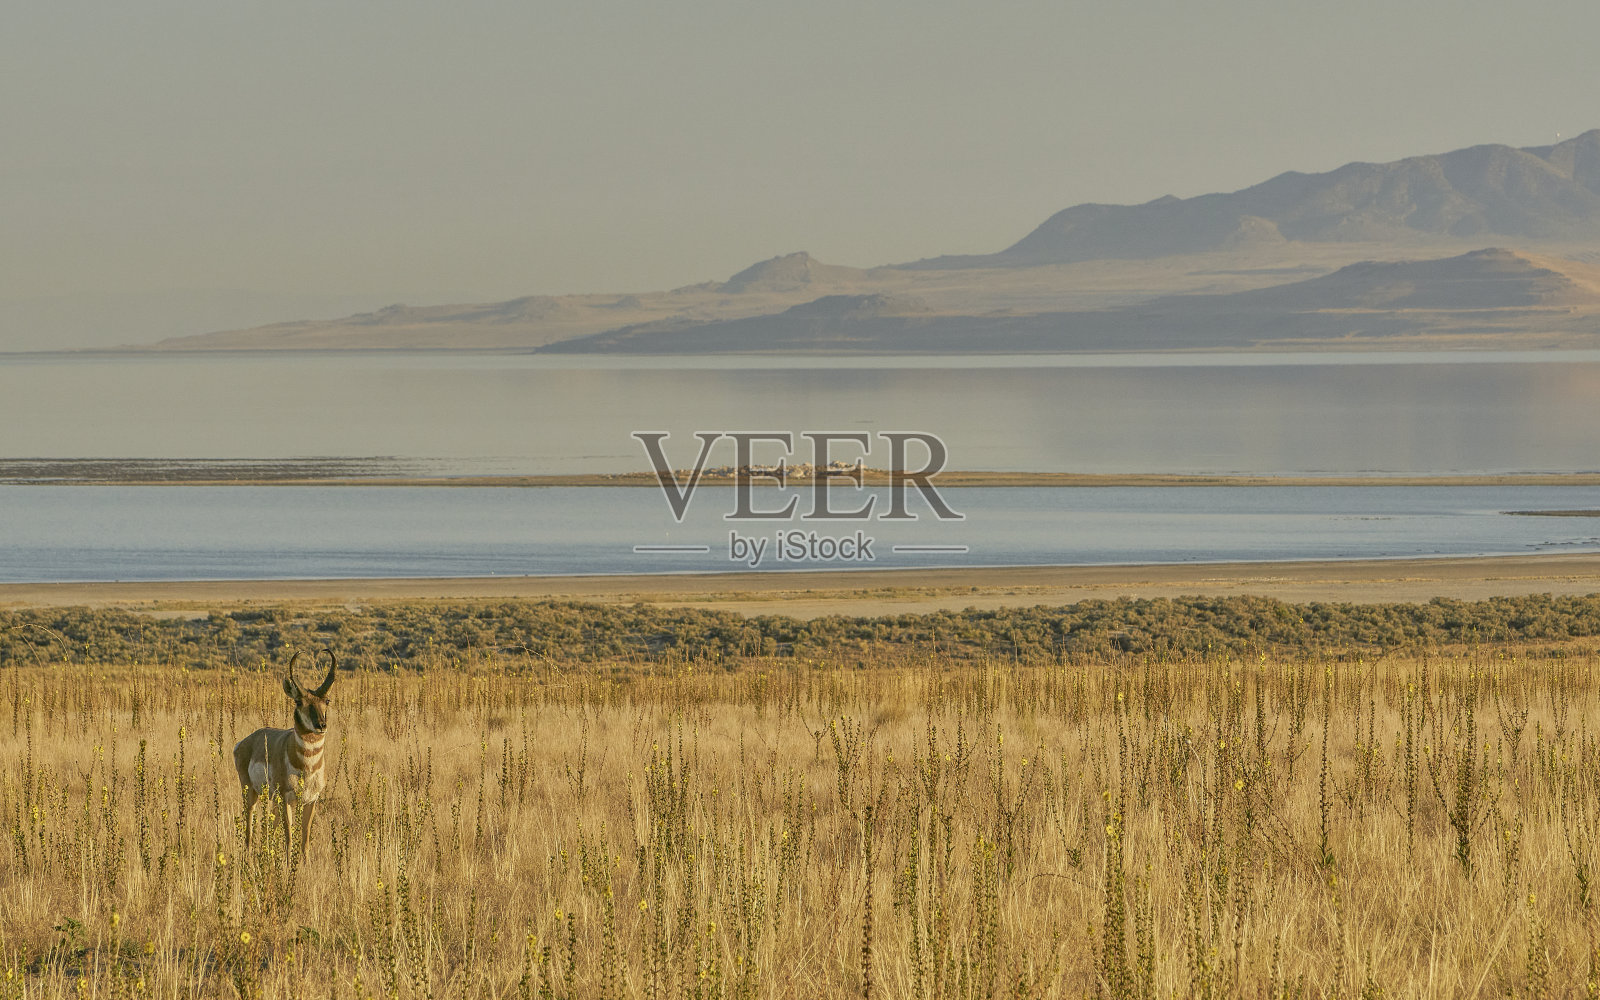 美丽的野生叉角羚
美国犹他州盐湖城附近的羚羊岛州立公园照片摄影图片